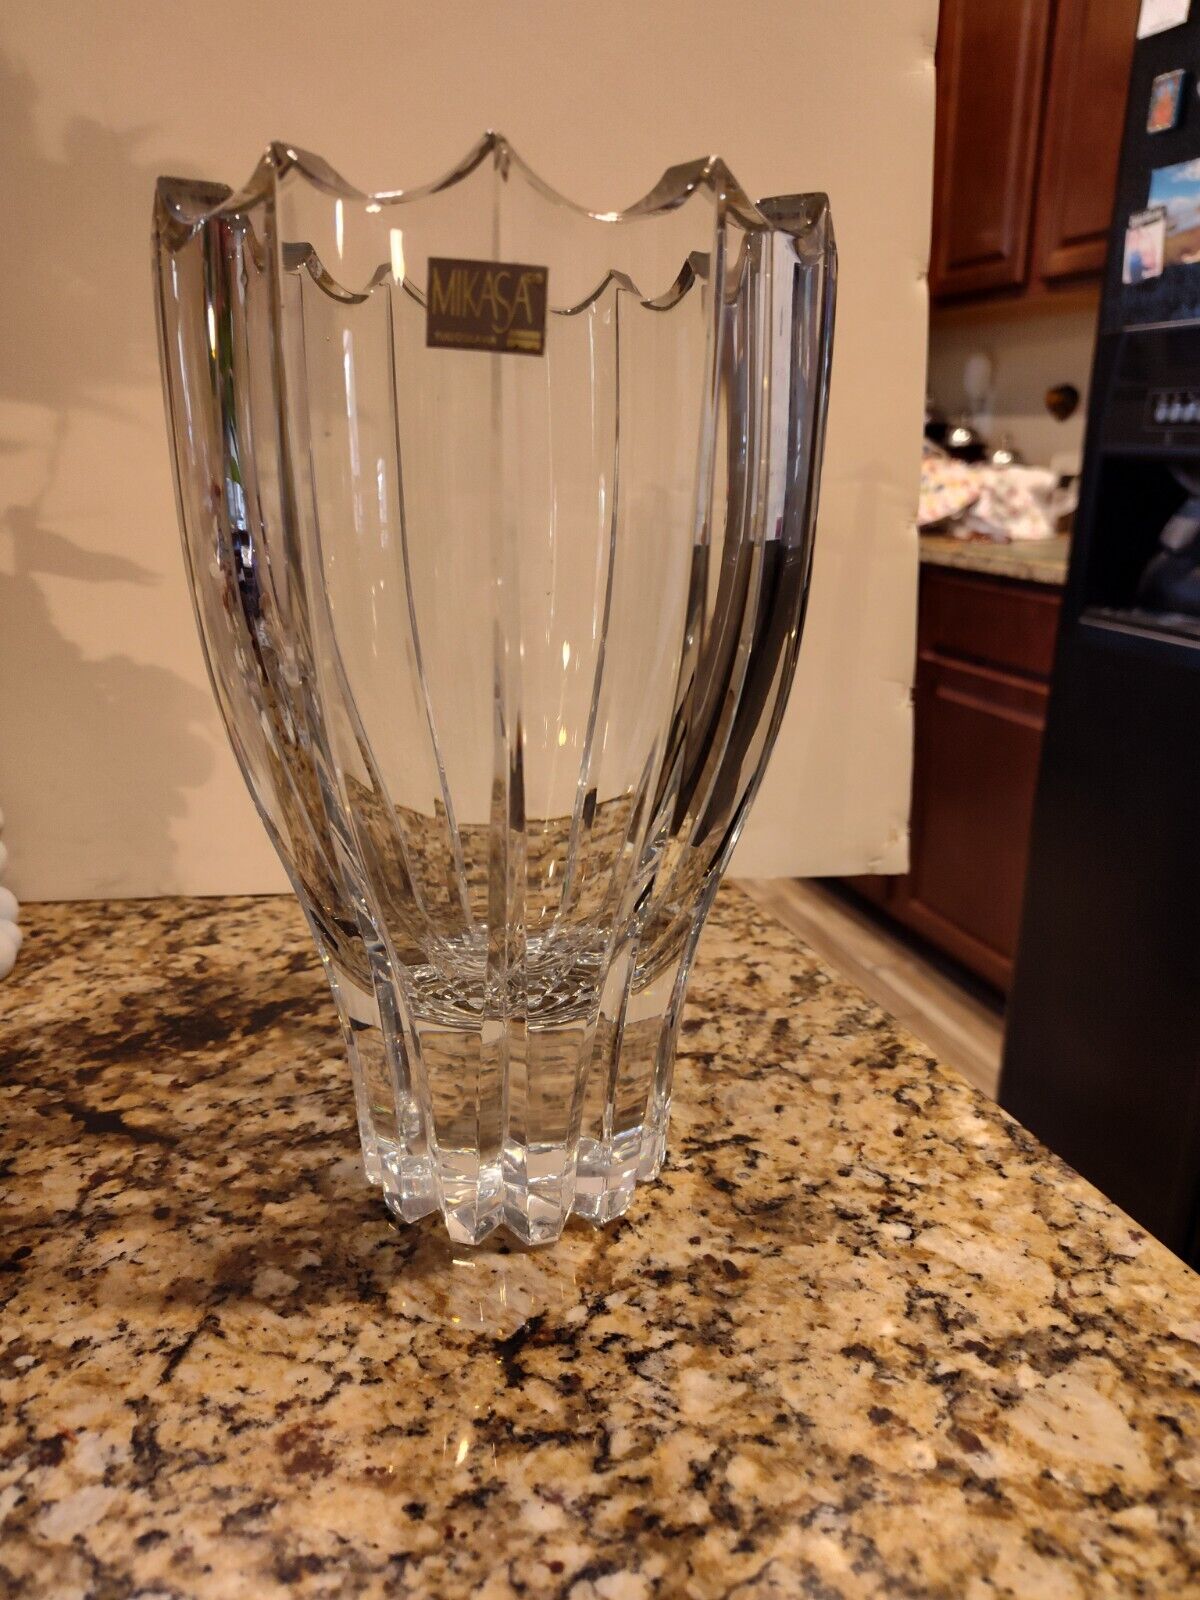 mikasa lead crystal vase